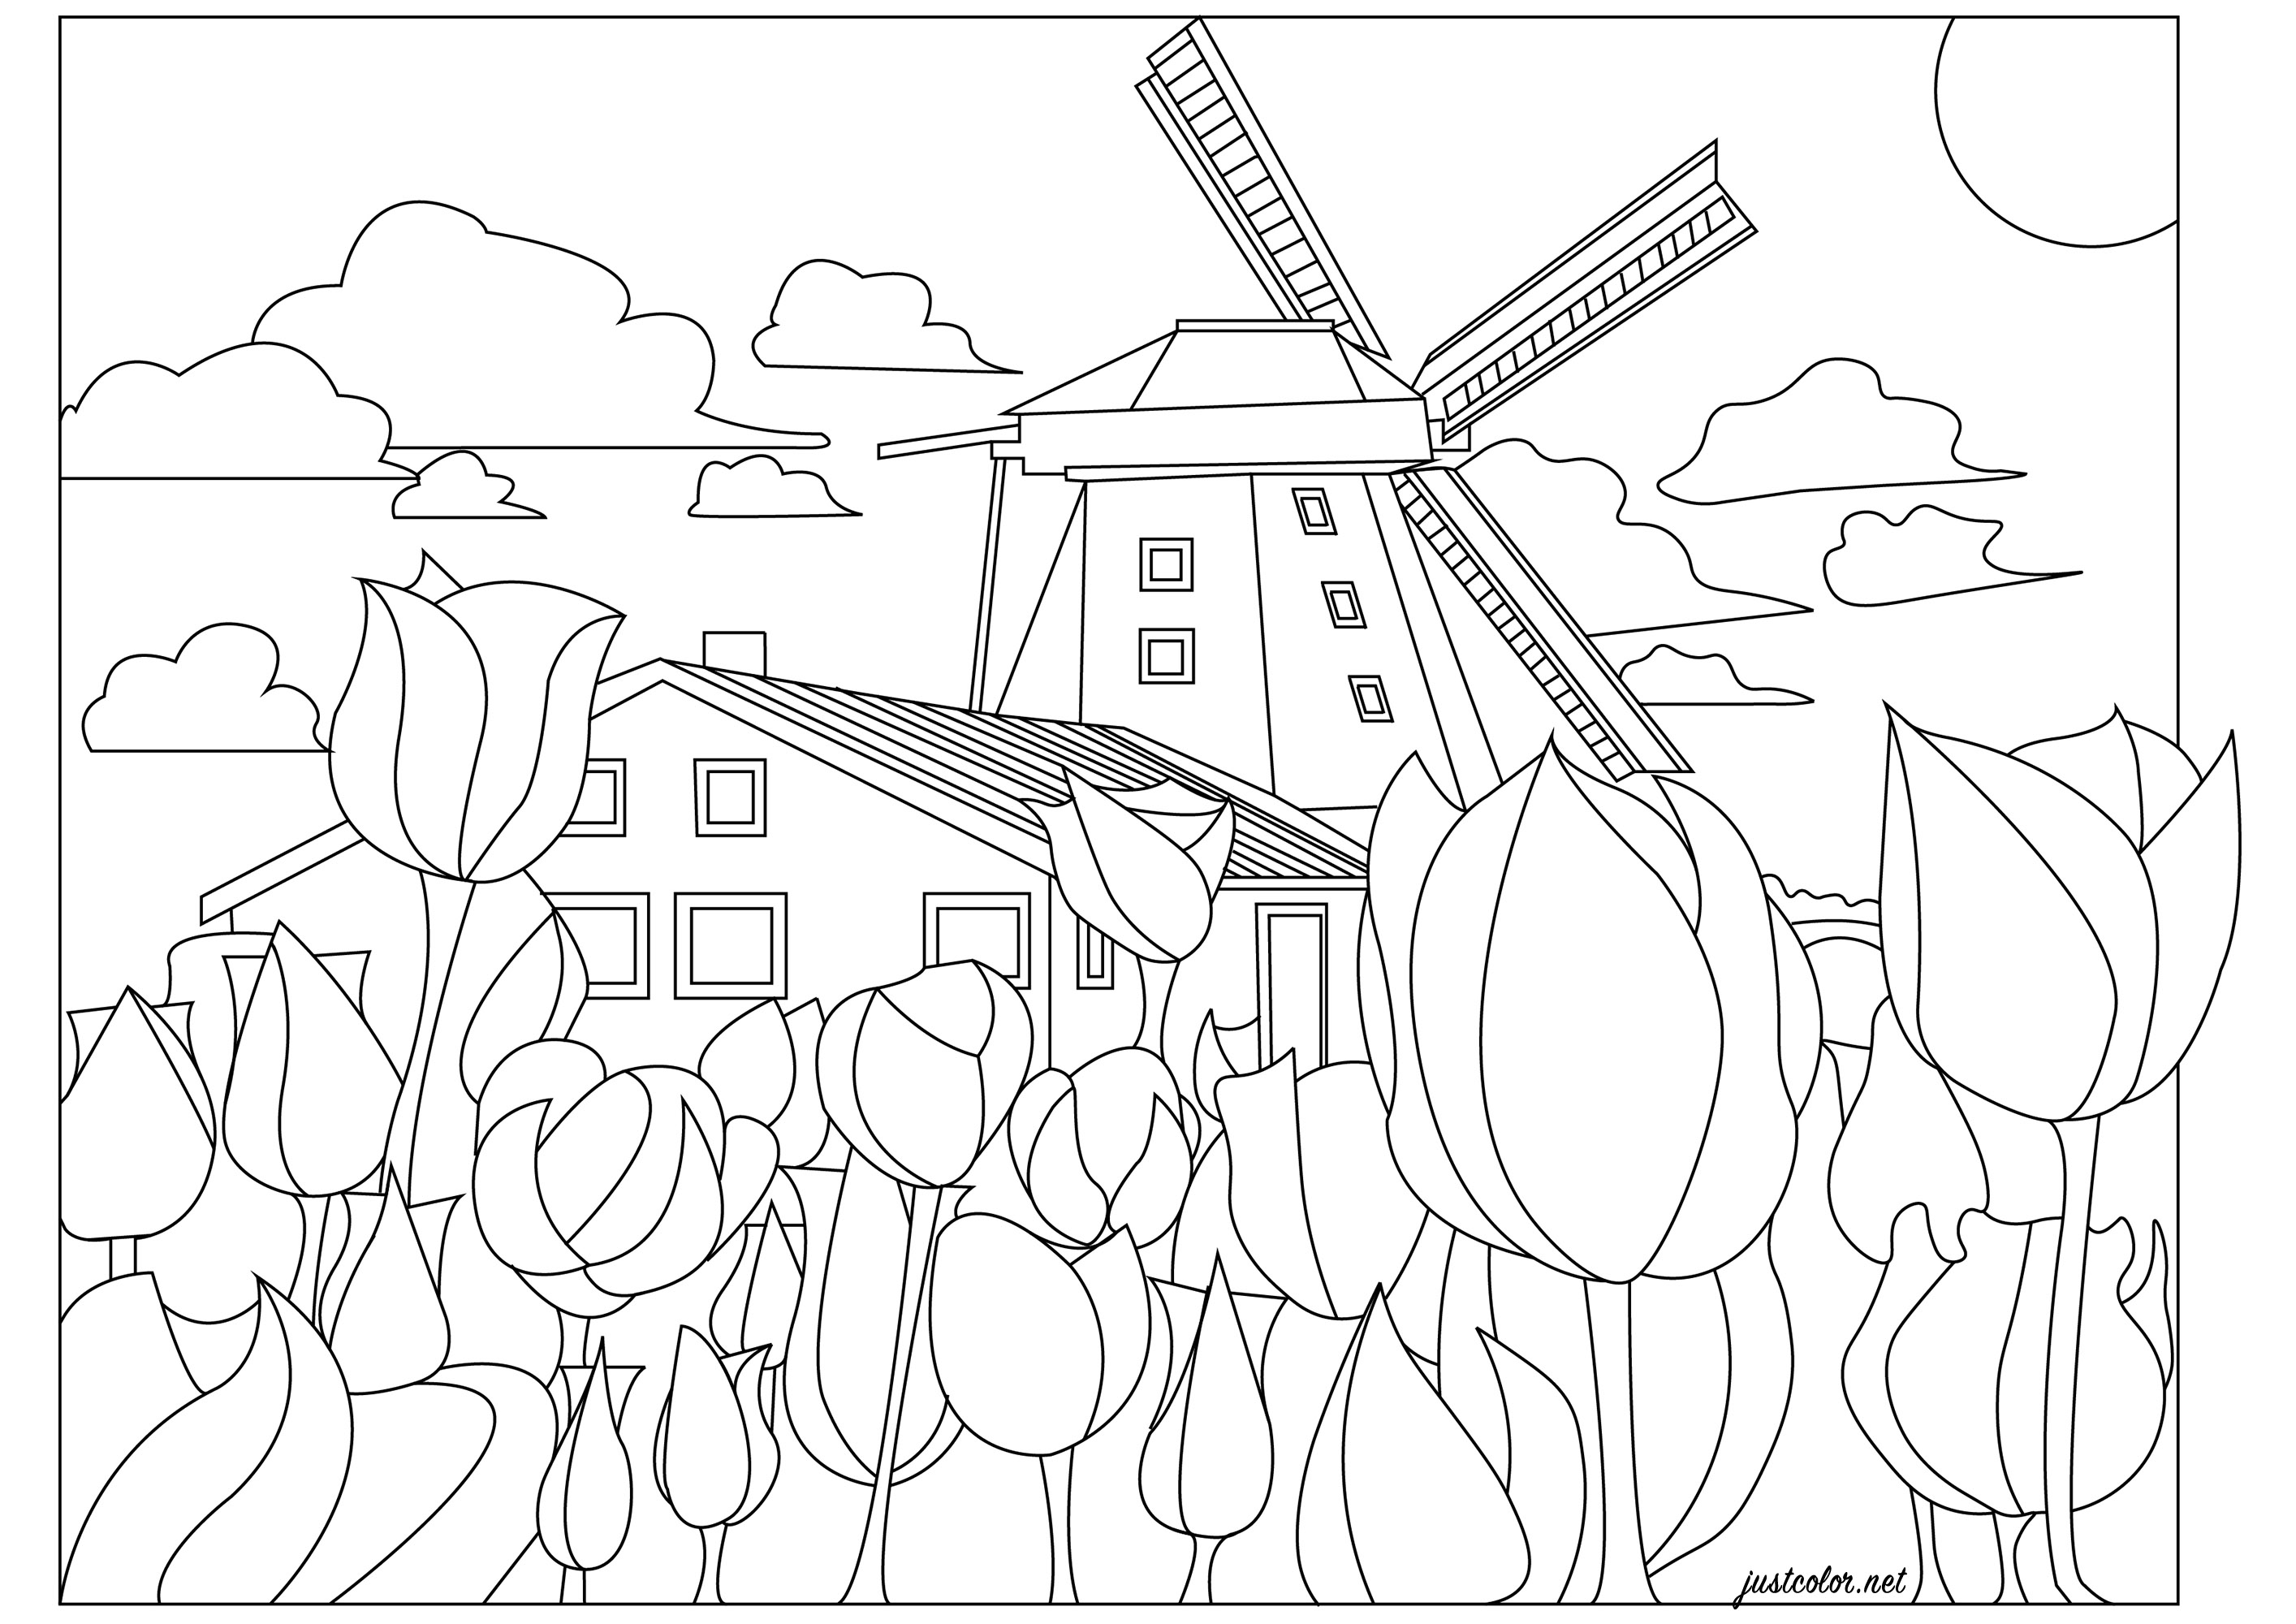 I Paesi Bassi, la terra dei mulini a vento e dei campi di tulipani. La campagna olandese in primavera! Una pagina da colorare con tulipani di mille colori (a scelta), un mulino a vento e una tipica casa olandese, Artista : Morgan